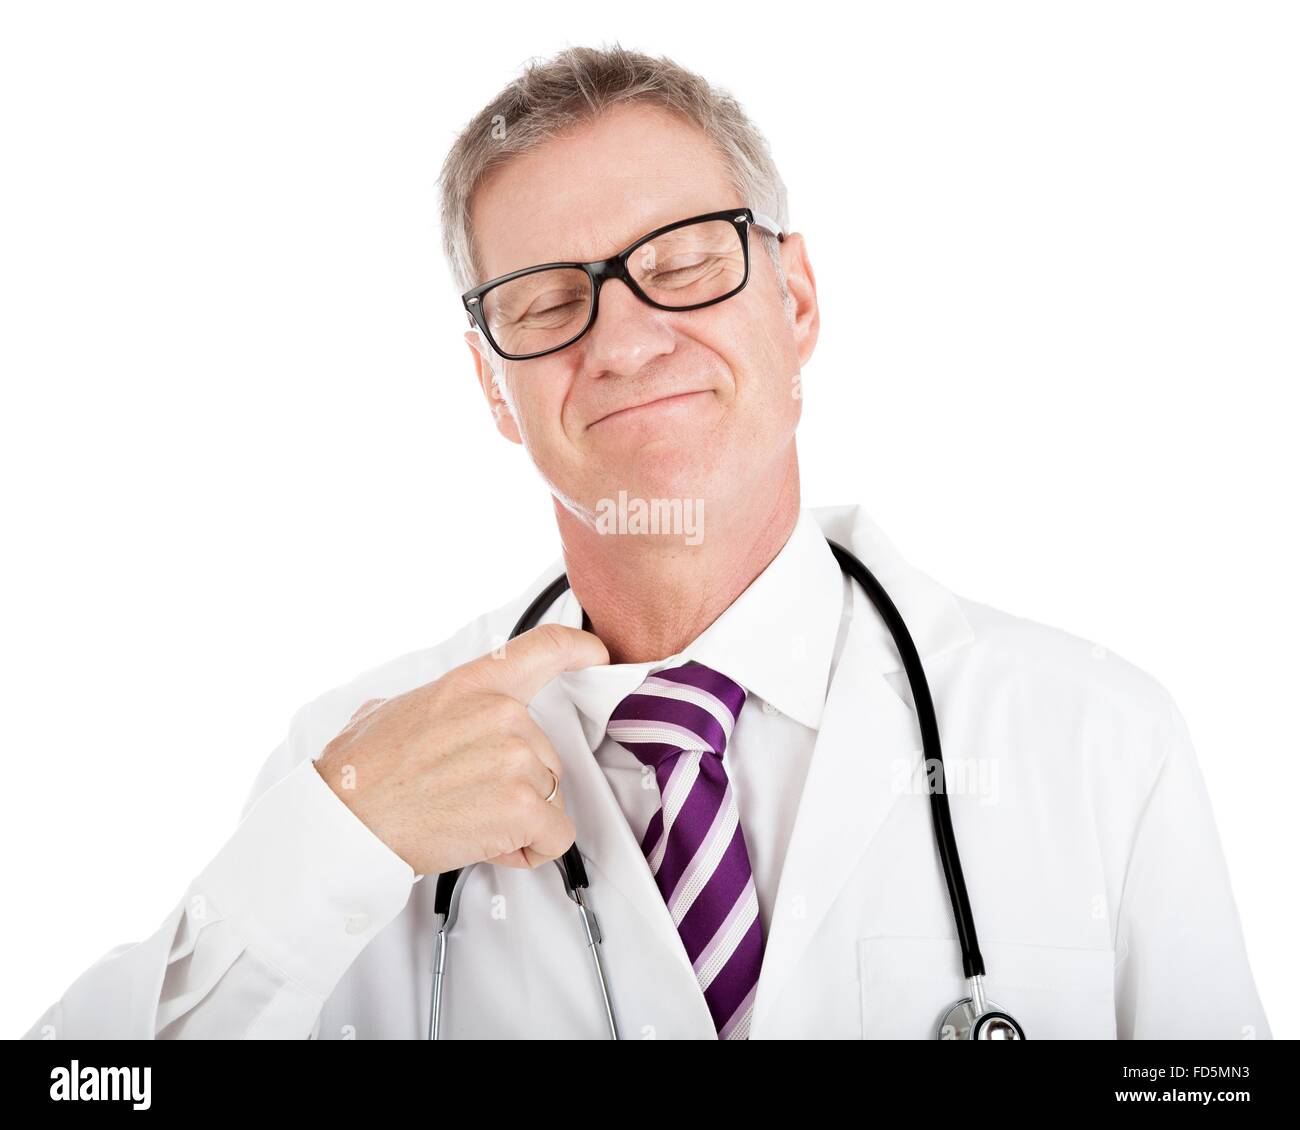 Lächelnde Arzt seine Krawatte von seinem Finger in den Hals seines Hemdes einfügen, wie er auf Druck und Stress reagiert lösen Stockfoto